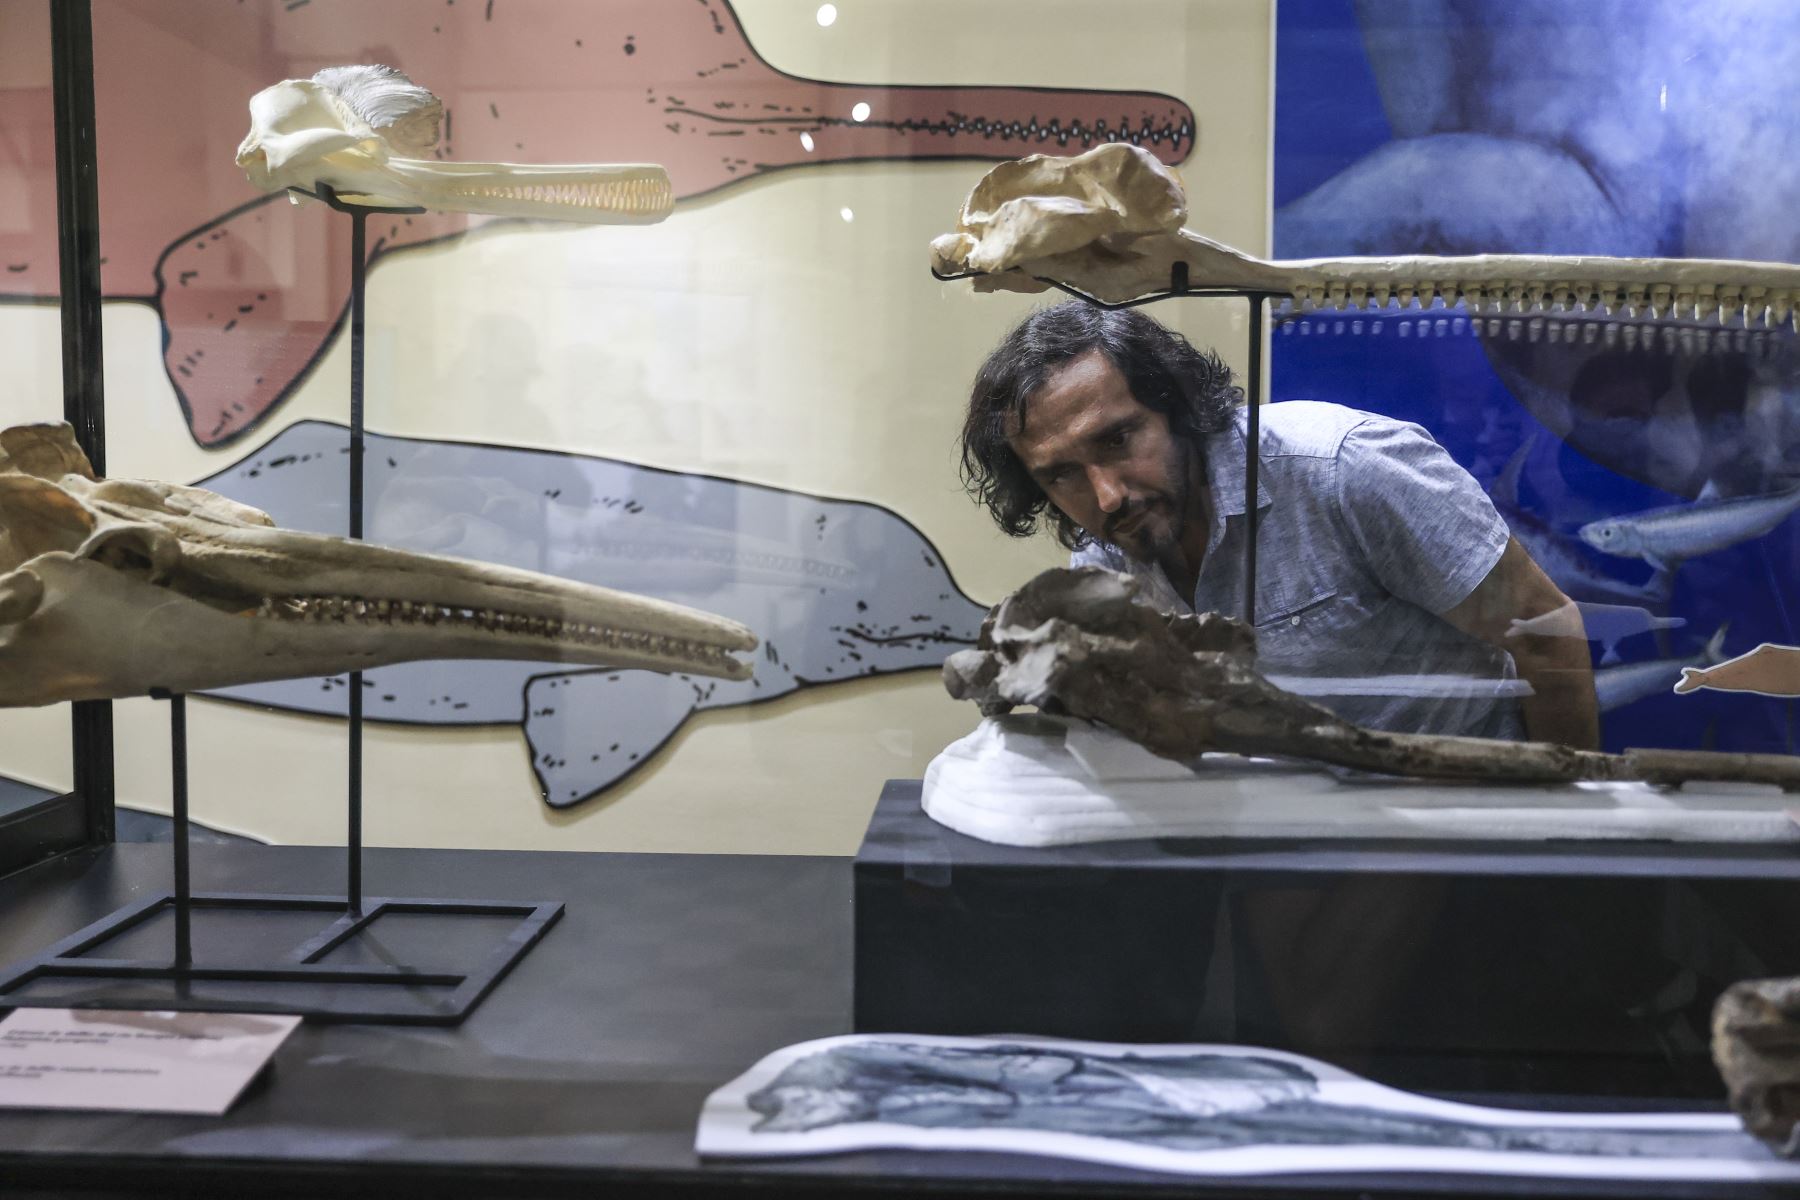 El delfín fósil bautizado como "Pebanista yacuruna" fue descubierto durante la expedición Río Napo 2018, liderada por el paleontólogo peruano Rodolfo  Salas-Gismondi. Foto: ANDINA/Jhonel Rodríguez Robles